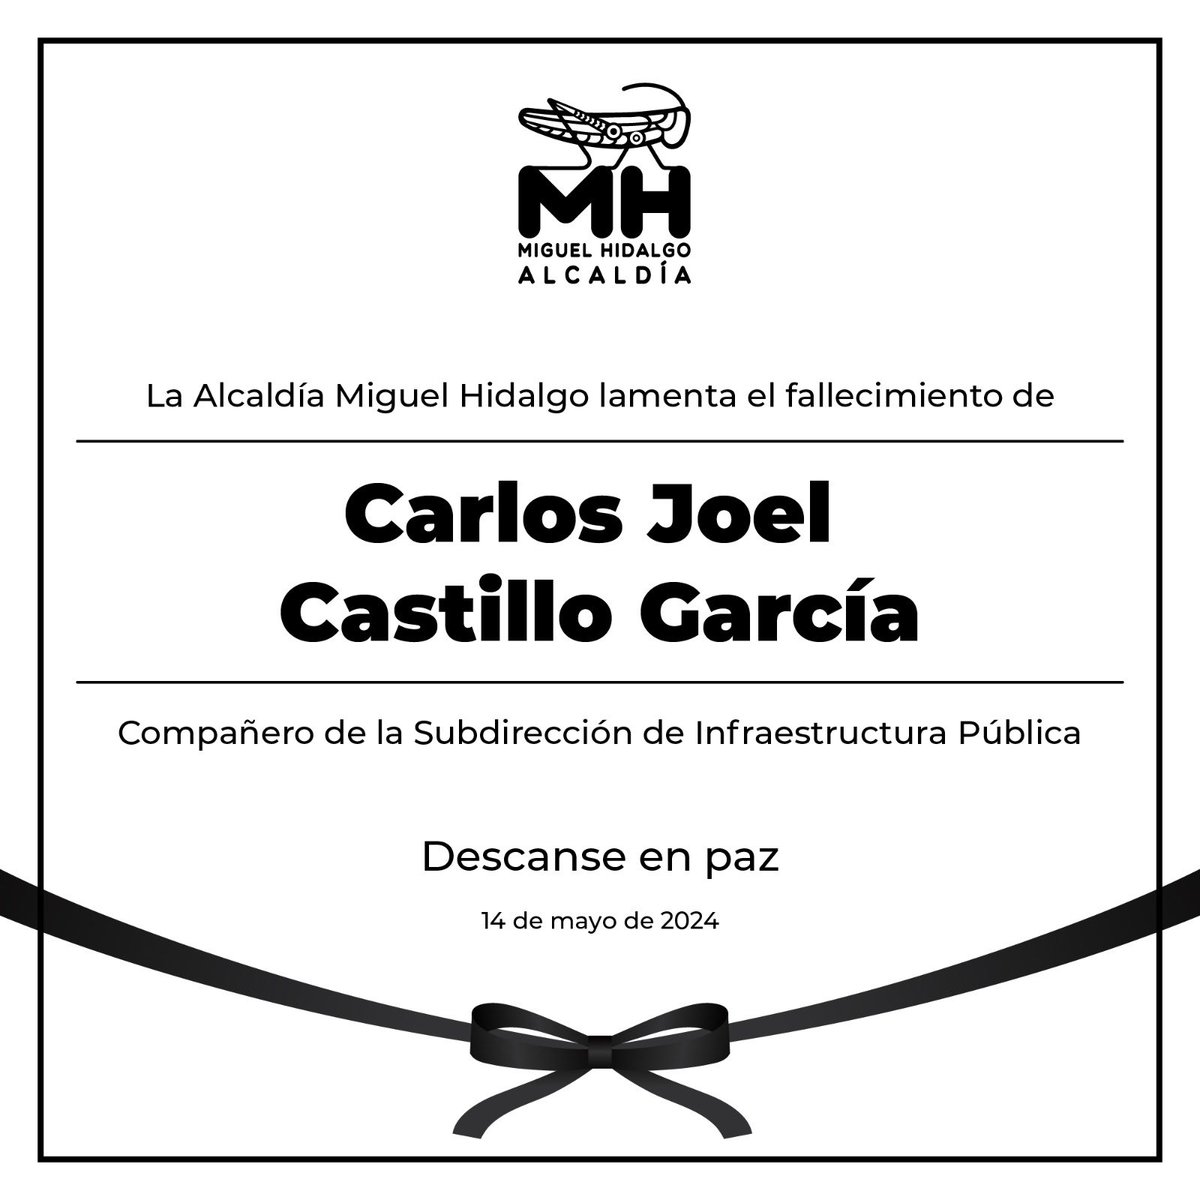 Nuestras más sinceras condolencias a familiares y amigos de nuestro compañero Carlos Joel Castillo García del área de la Subdirección de Infraestructura Pública. Descanse en paz.